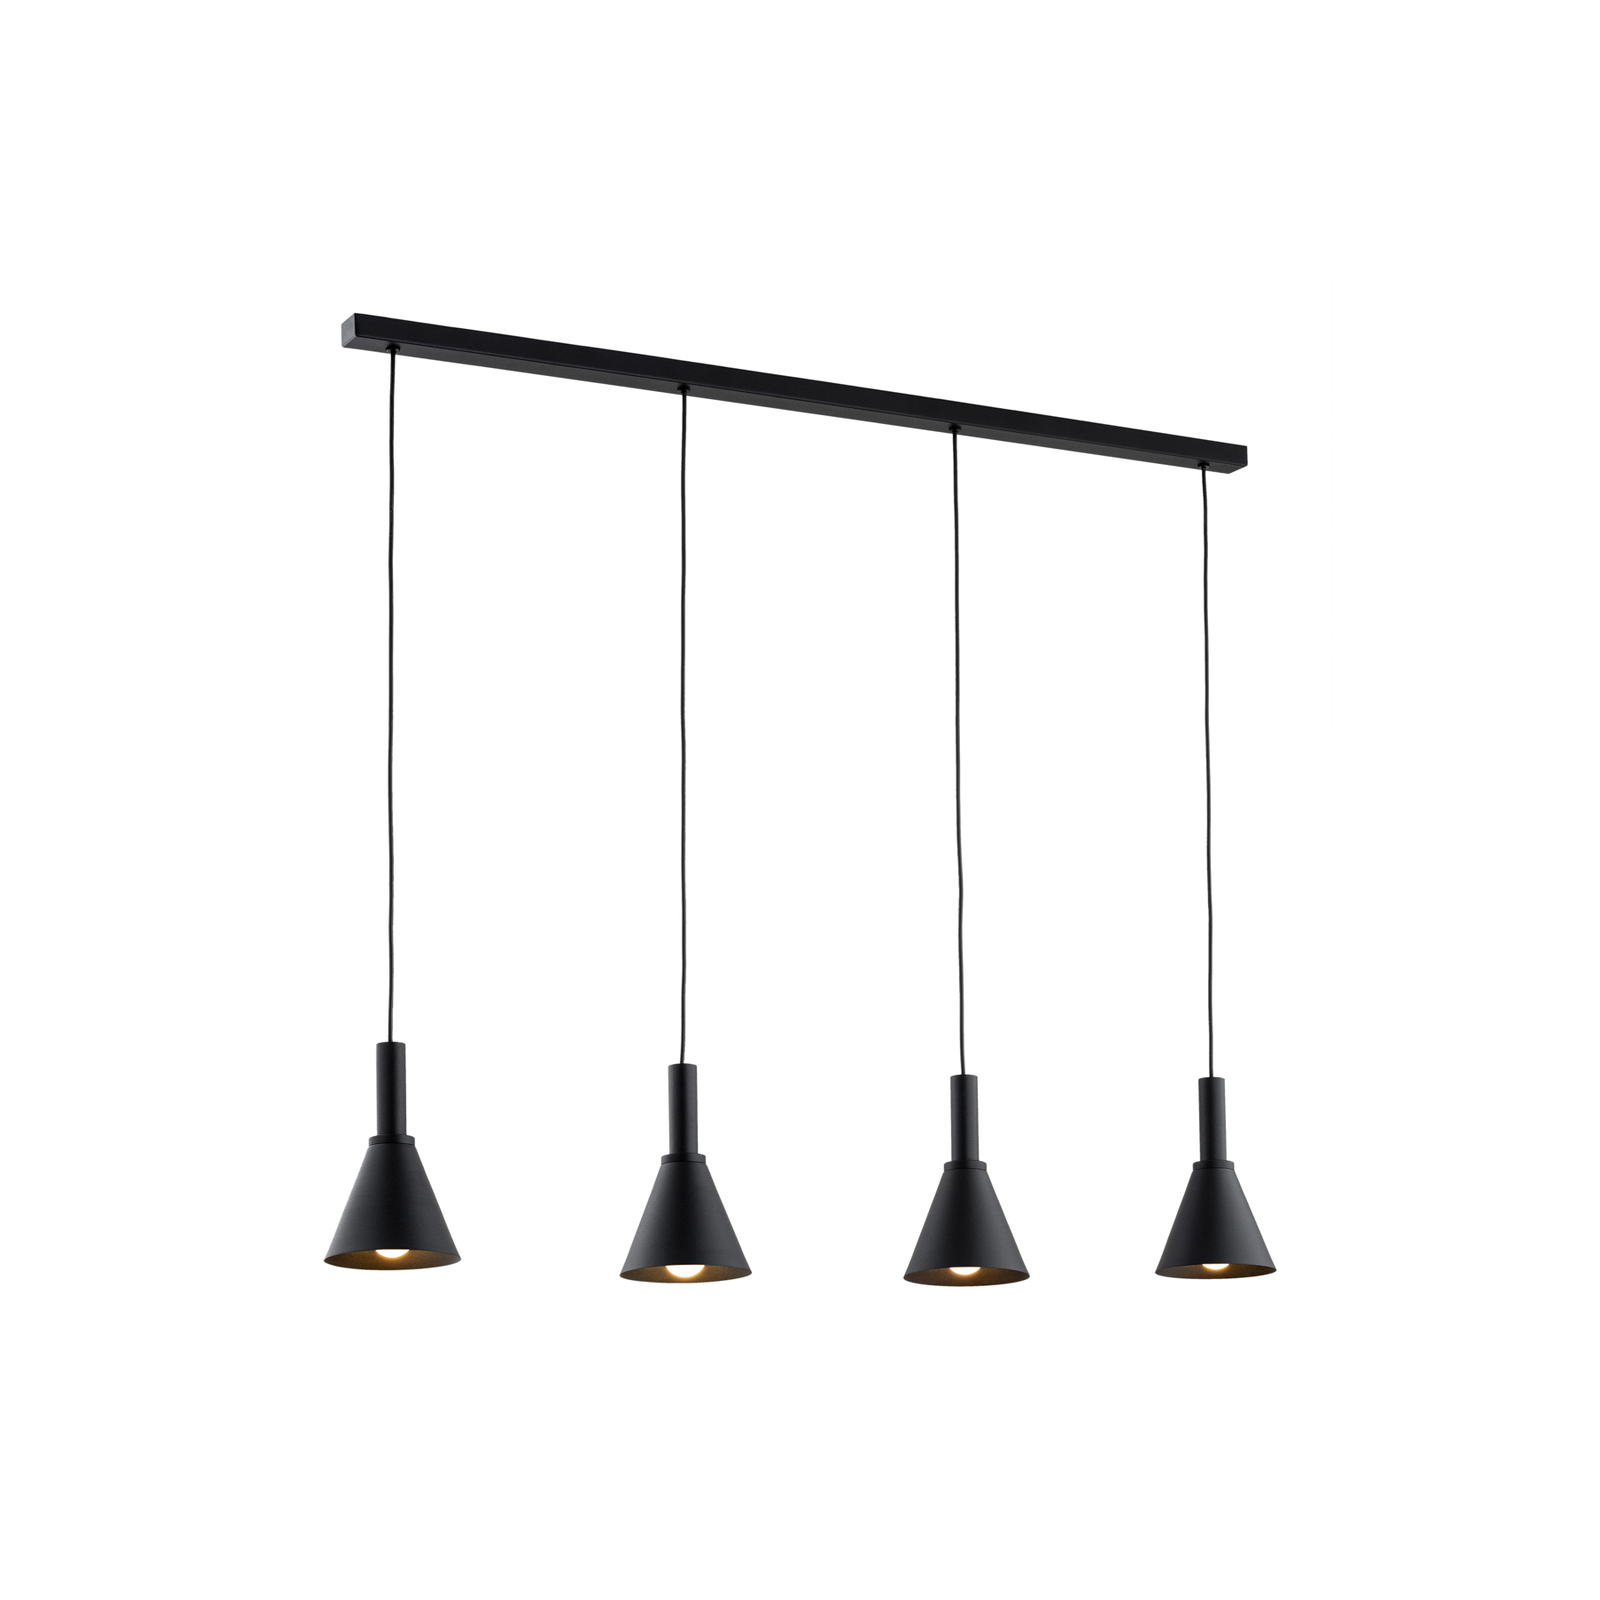 Norte pendant light, black, steel, length 114 cm, 4-bulb